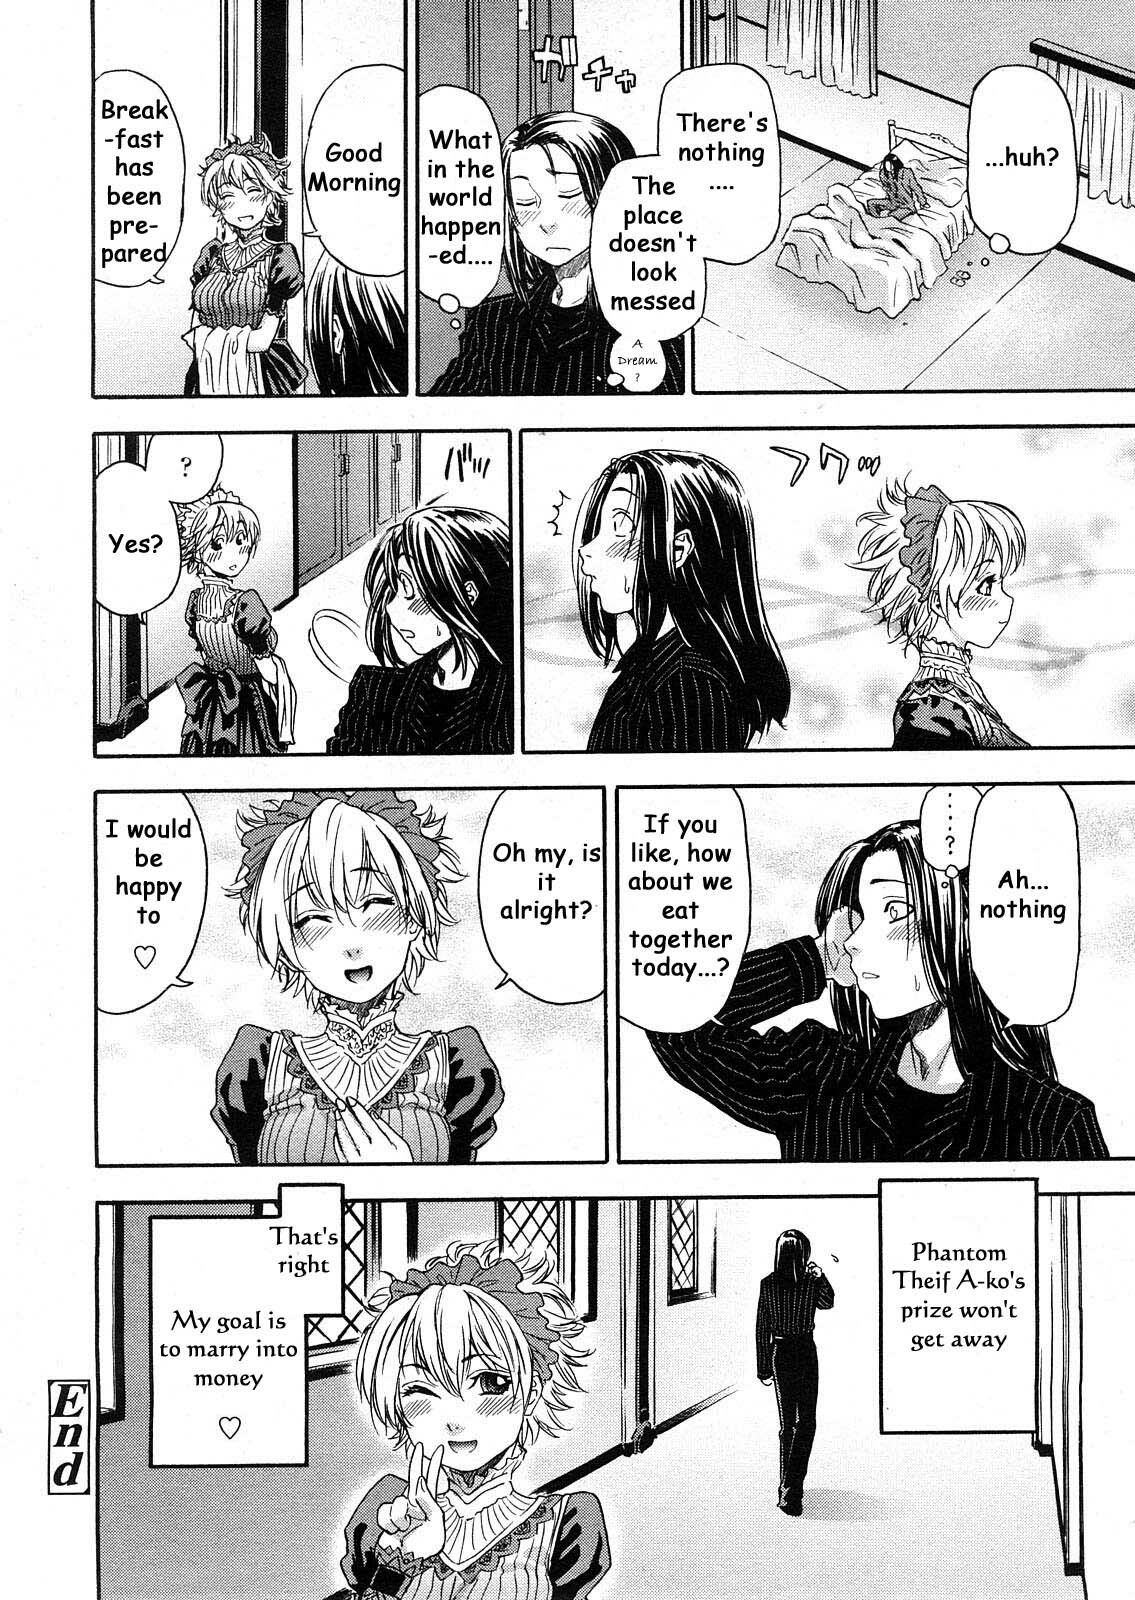 [Yamatogawa] Itadakima~Su! (I Humbly Receive~!) [English] page 16 full